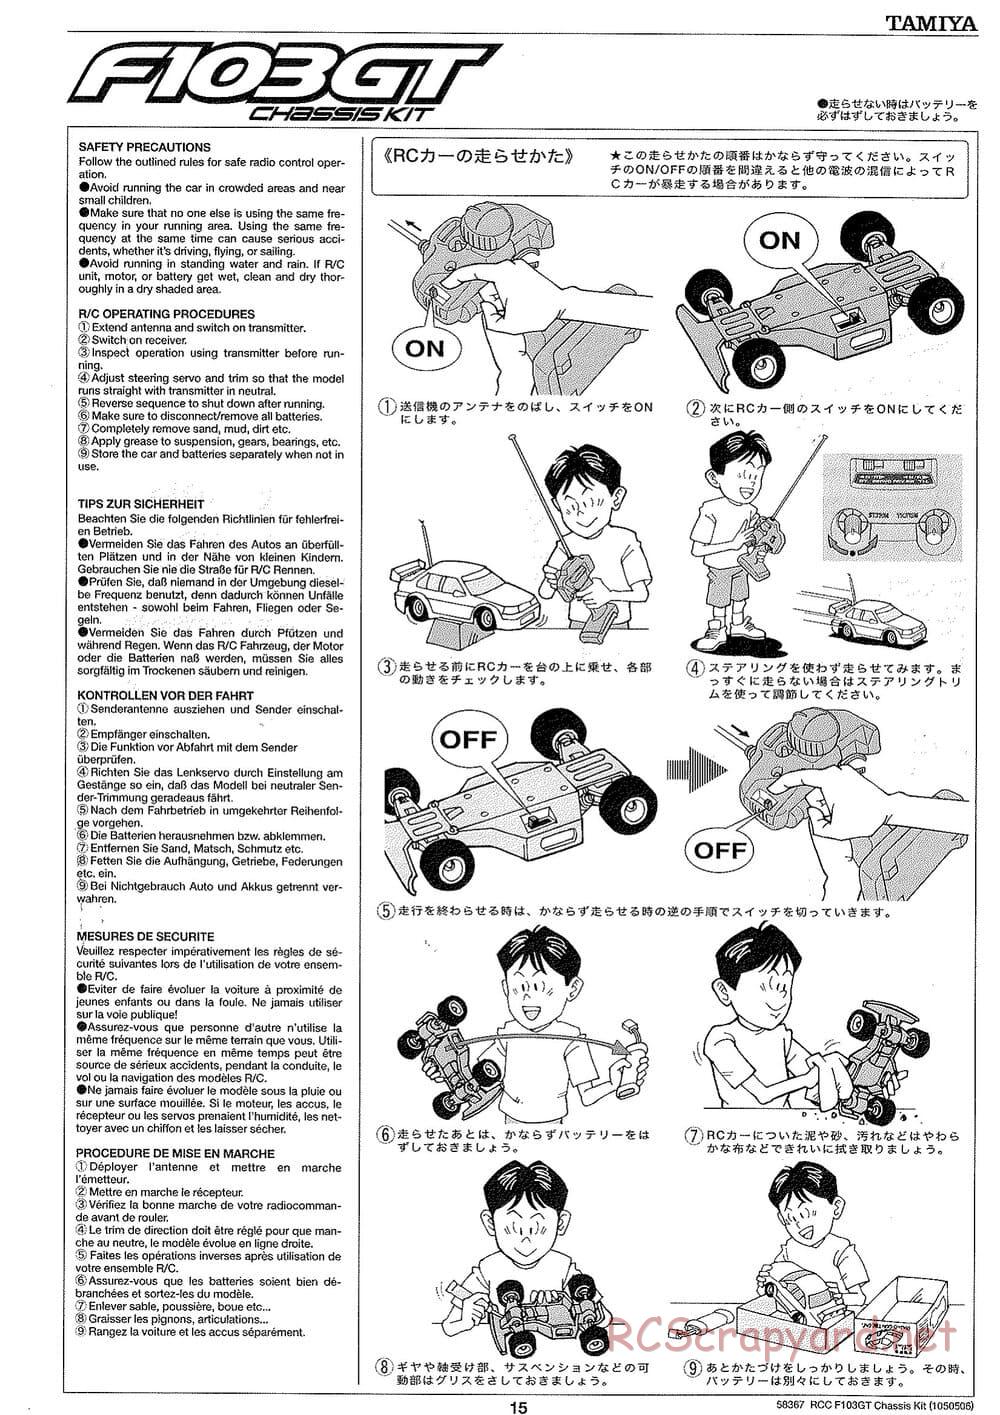 Tamiya - F103GT Chassis Kit - Manual - Page 15